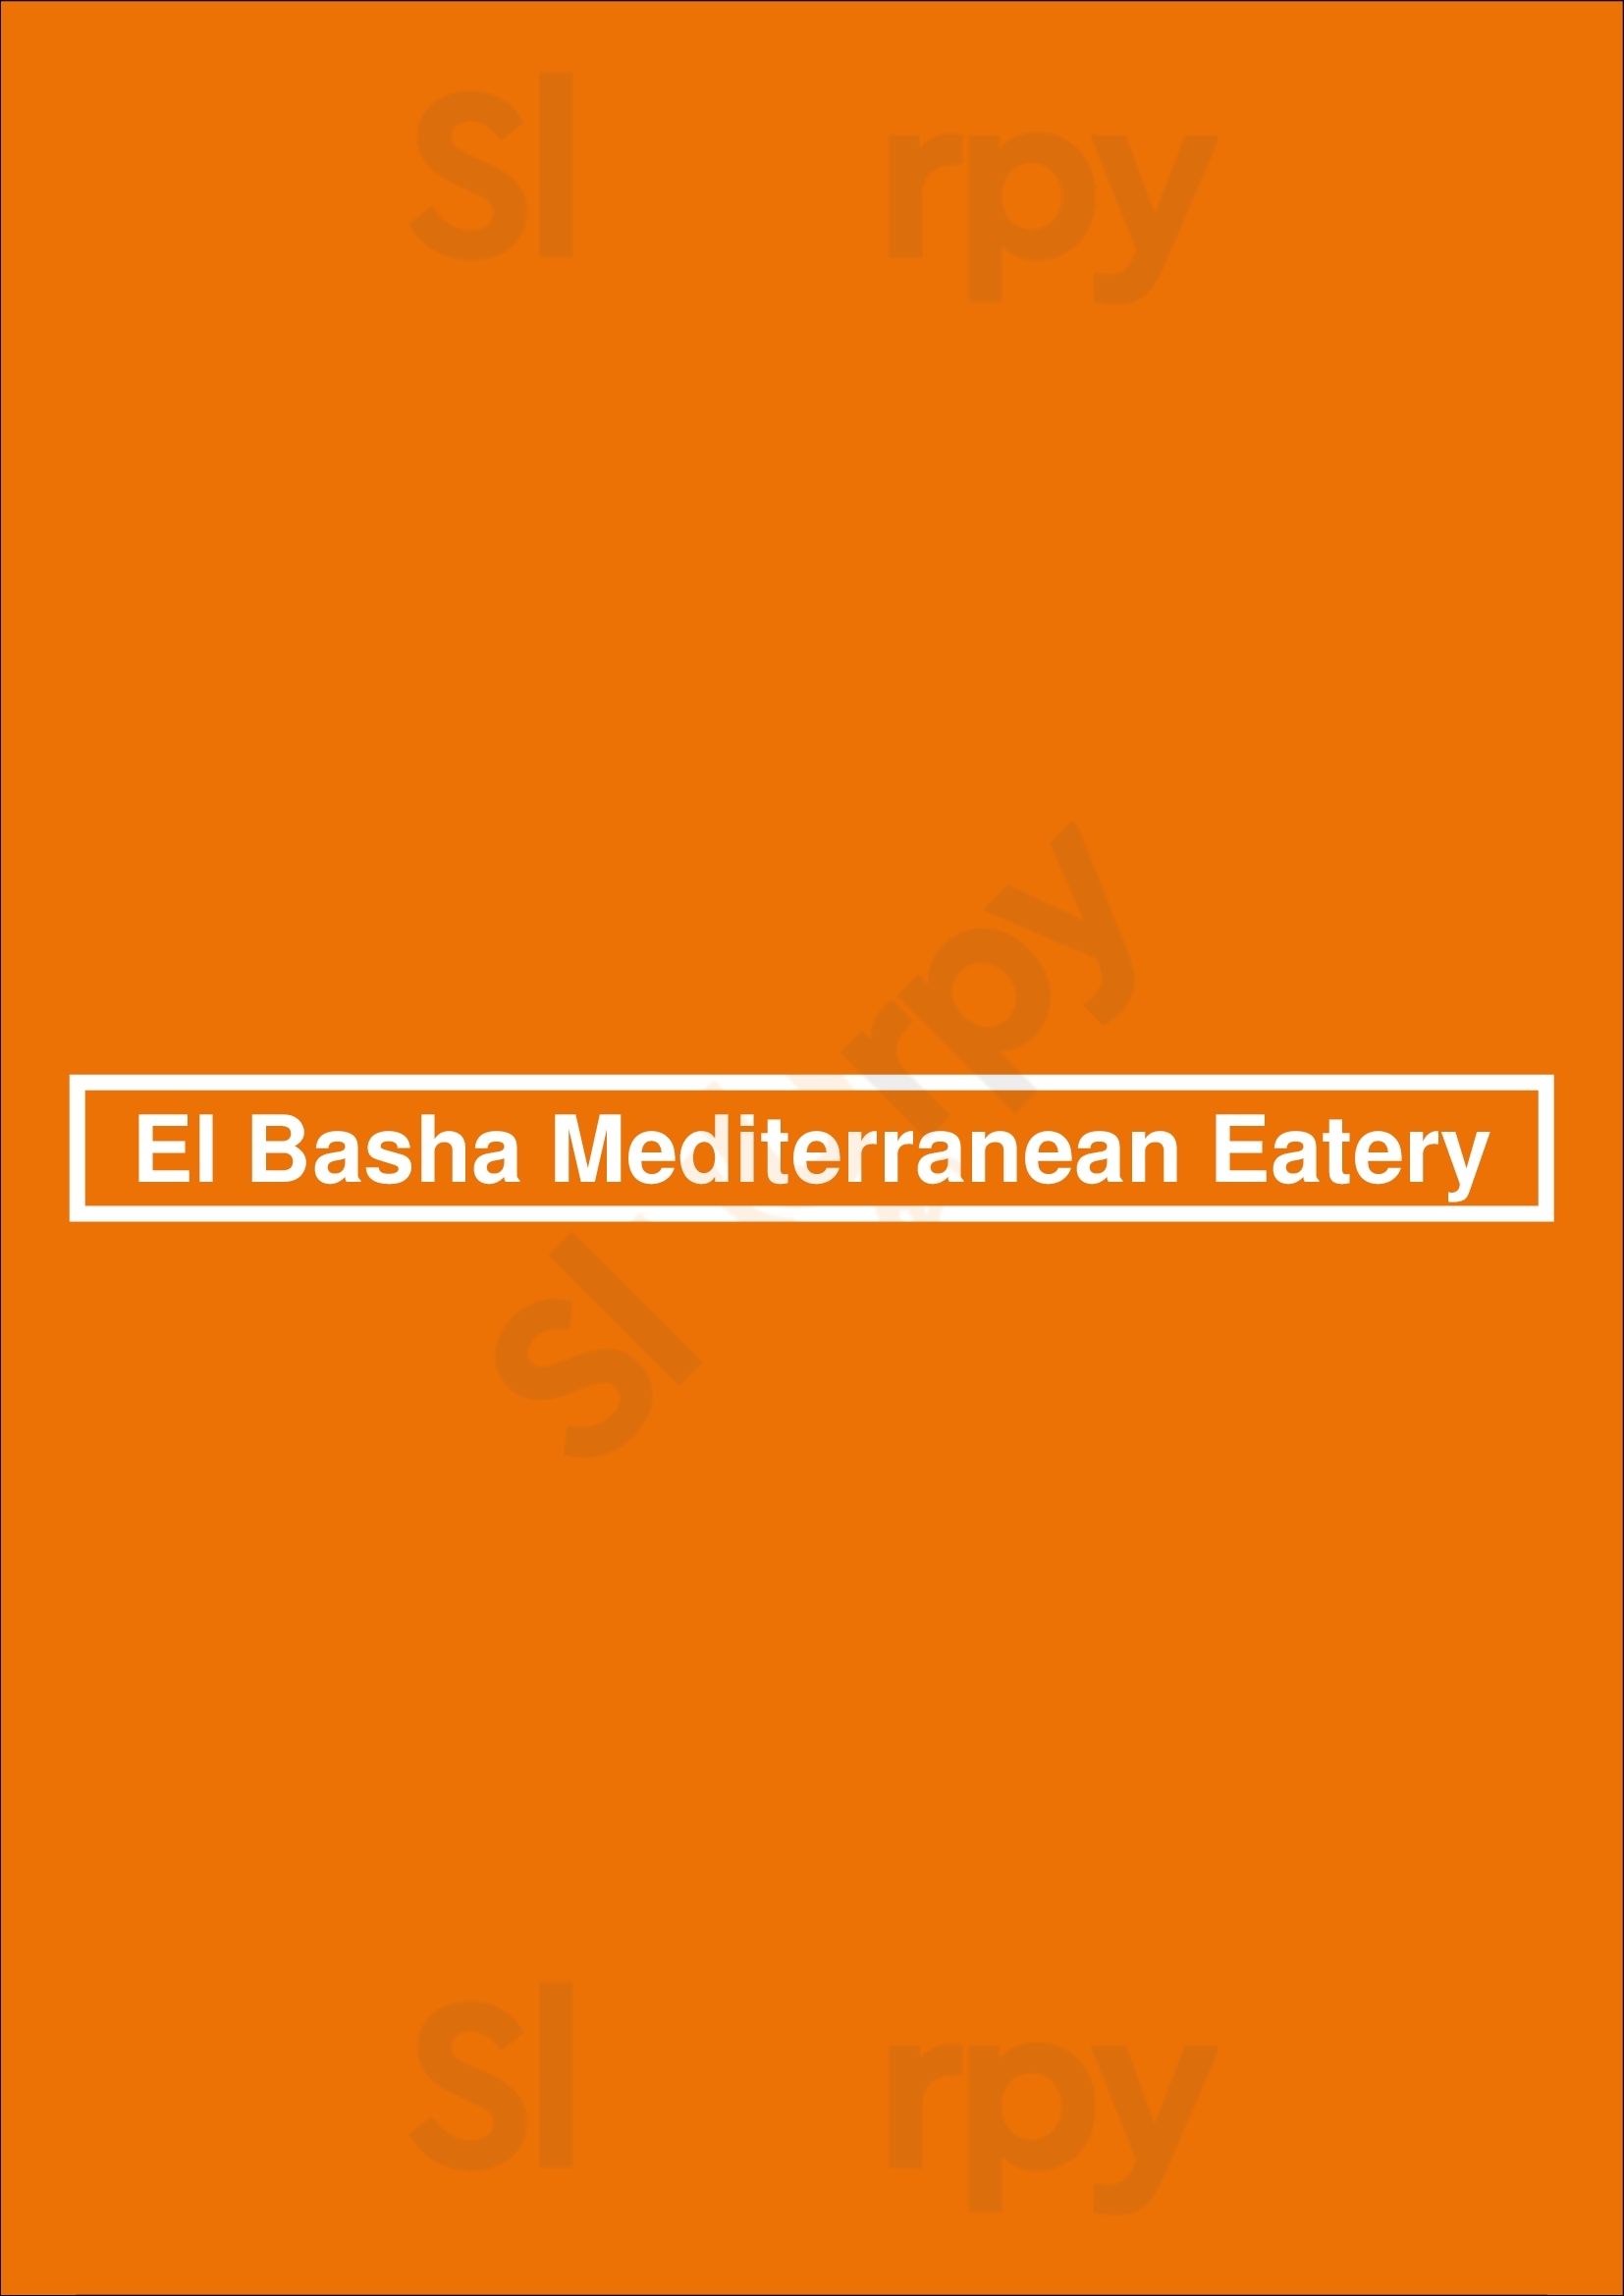 El Basha Mediterranean Eatery Victor Menu - 1